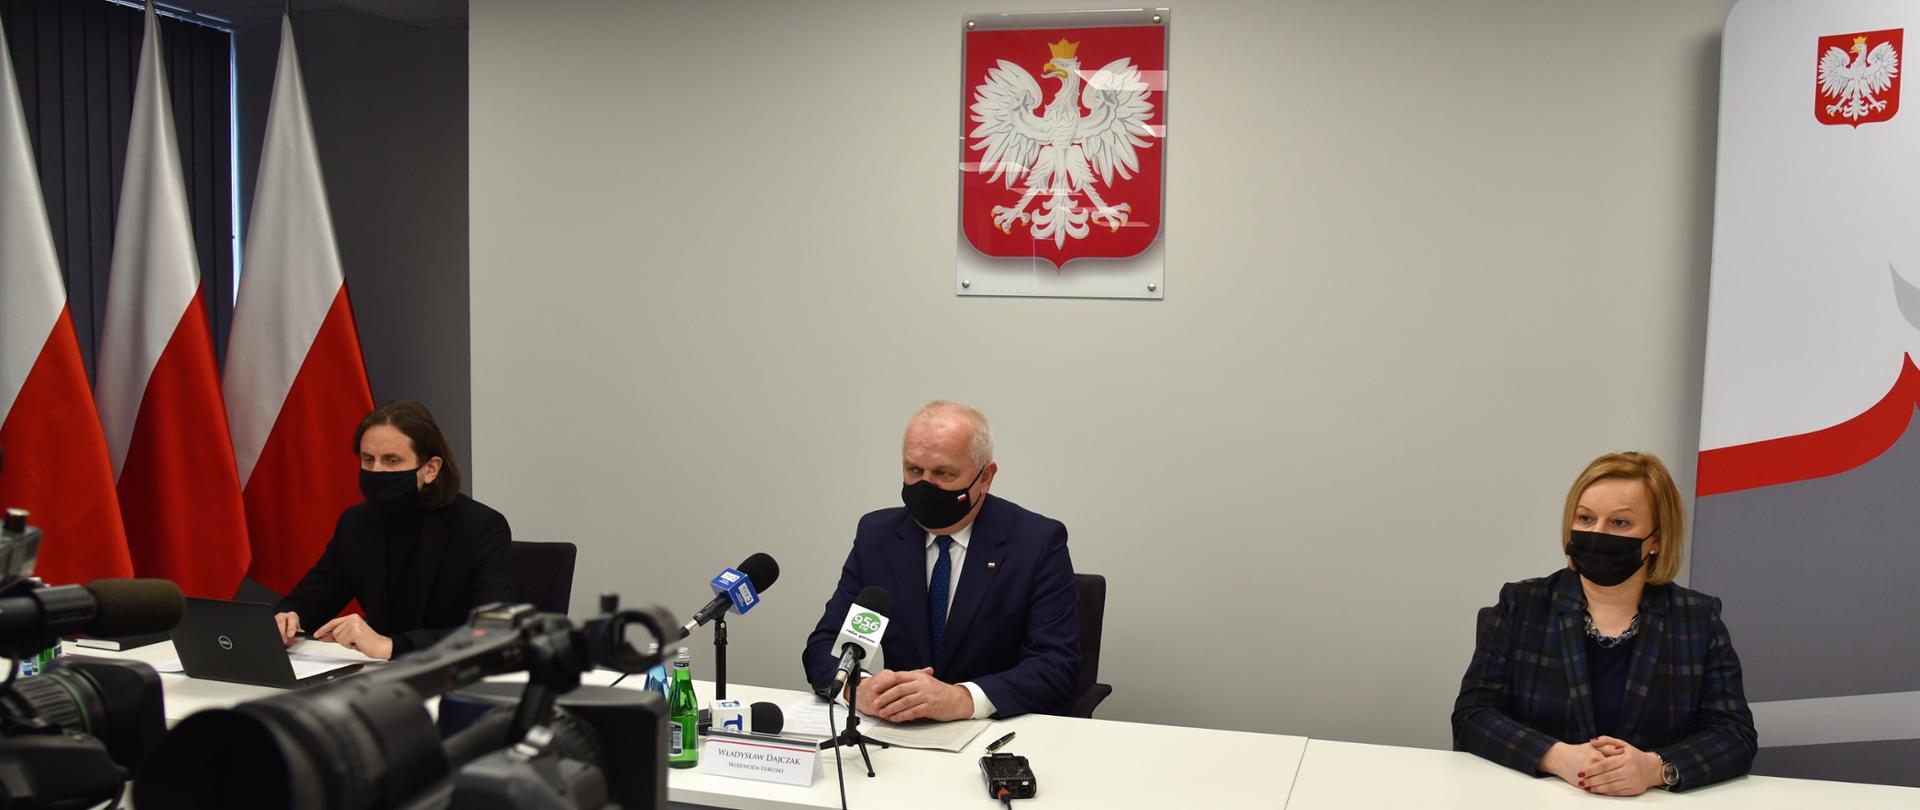 Na pierwszym planie dwie kamery telewizyjne. W części centralnej długi, biały stół konferencyjny. Za nim siedzą, w oddaleniu od siebie (od lewej) dyrektor NFZ-u, wojewoda lubuski i burmistrz Drezdenka. W tle roll-up Lubuskiego Urzędu Wojewódzkiego i biało-czerwone flagi